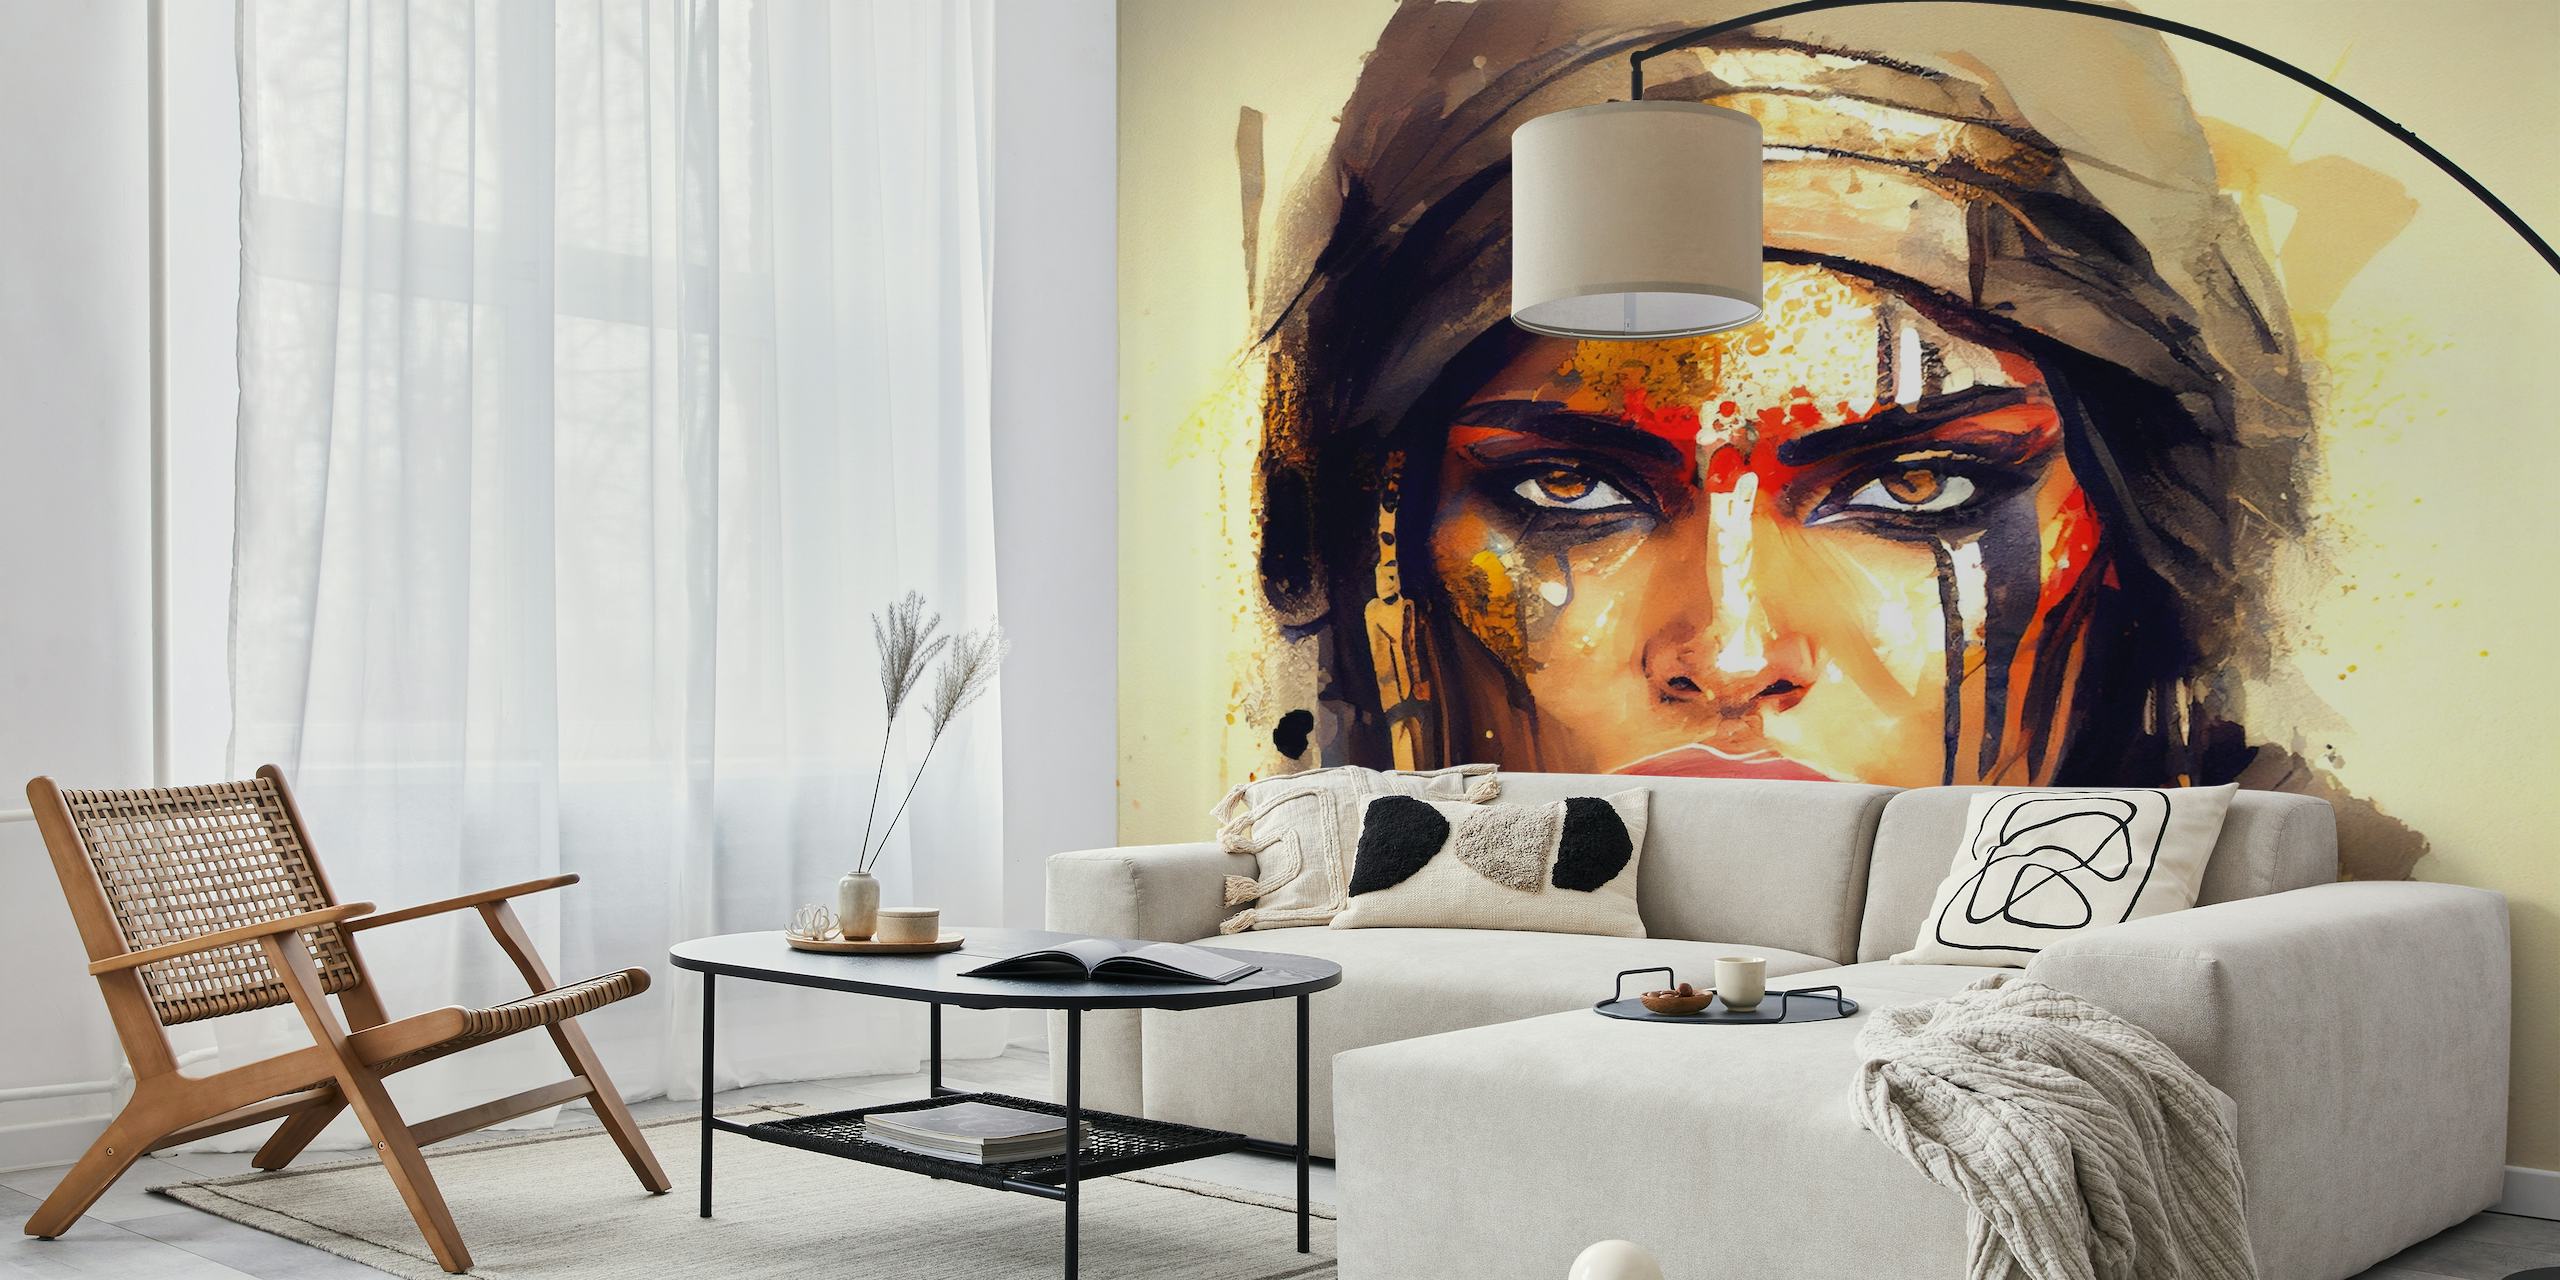 Umjetnički prikaz moćne egipatske žene ratnice s odvažnom bojom lica i odlučnim izrazom.